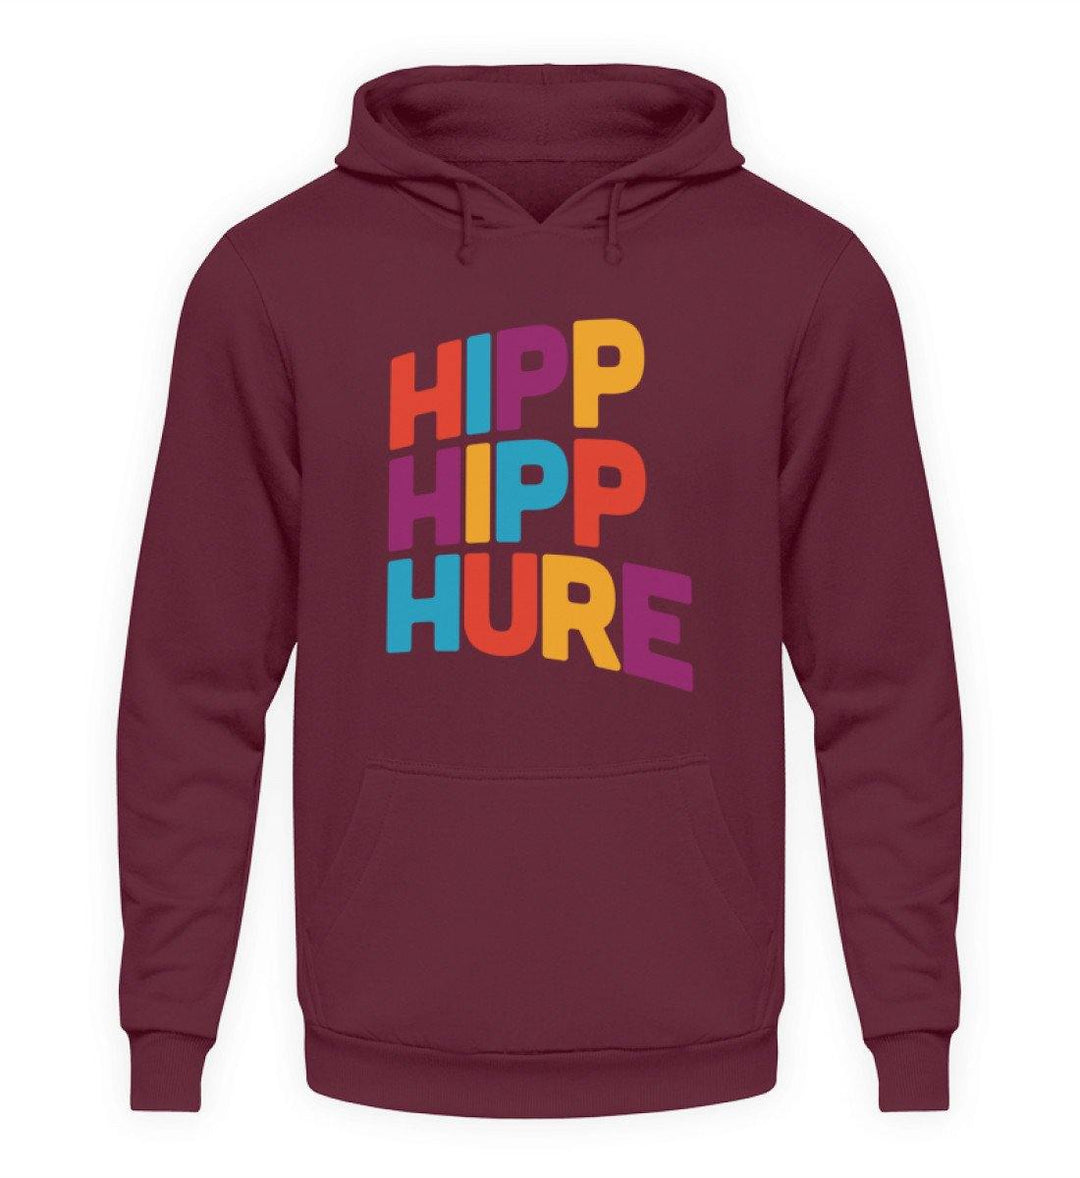 HIPP HIPP HURE- WORDS ON SHIRTS  - Unisex Kapuzenpullover Hoodie - Words on Shirts Sag es mit dem Mittelfinger Shirts Hoodies Sweatshirt Taschen Gymsack Spruch Sprüche Statement